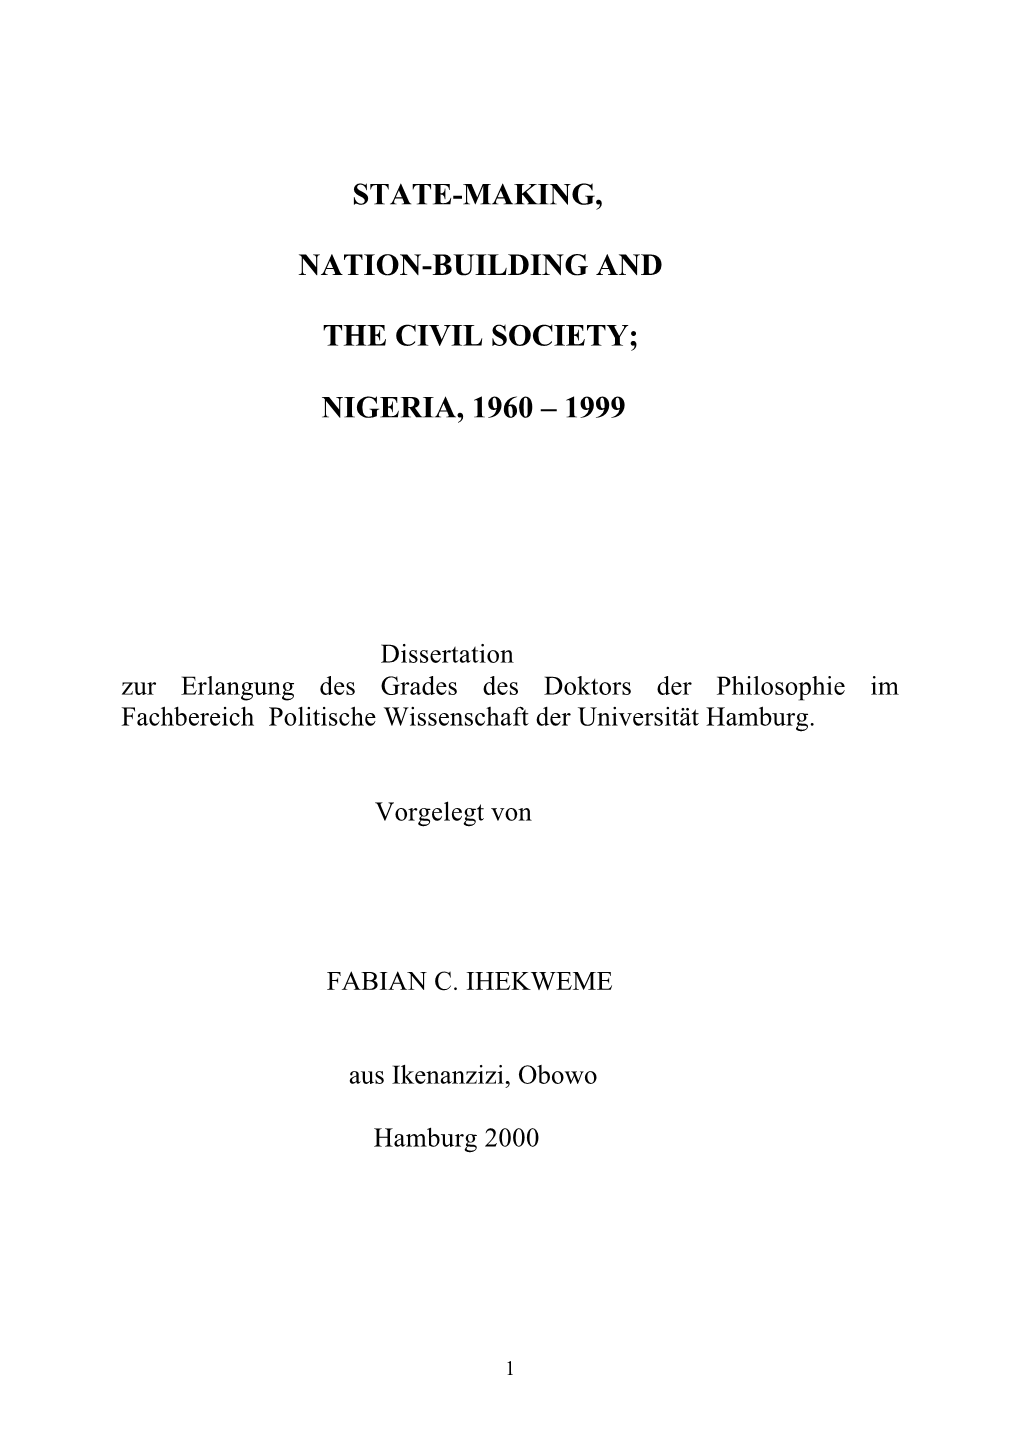 Nigeria, 1960 – 1999